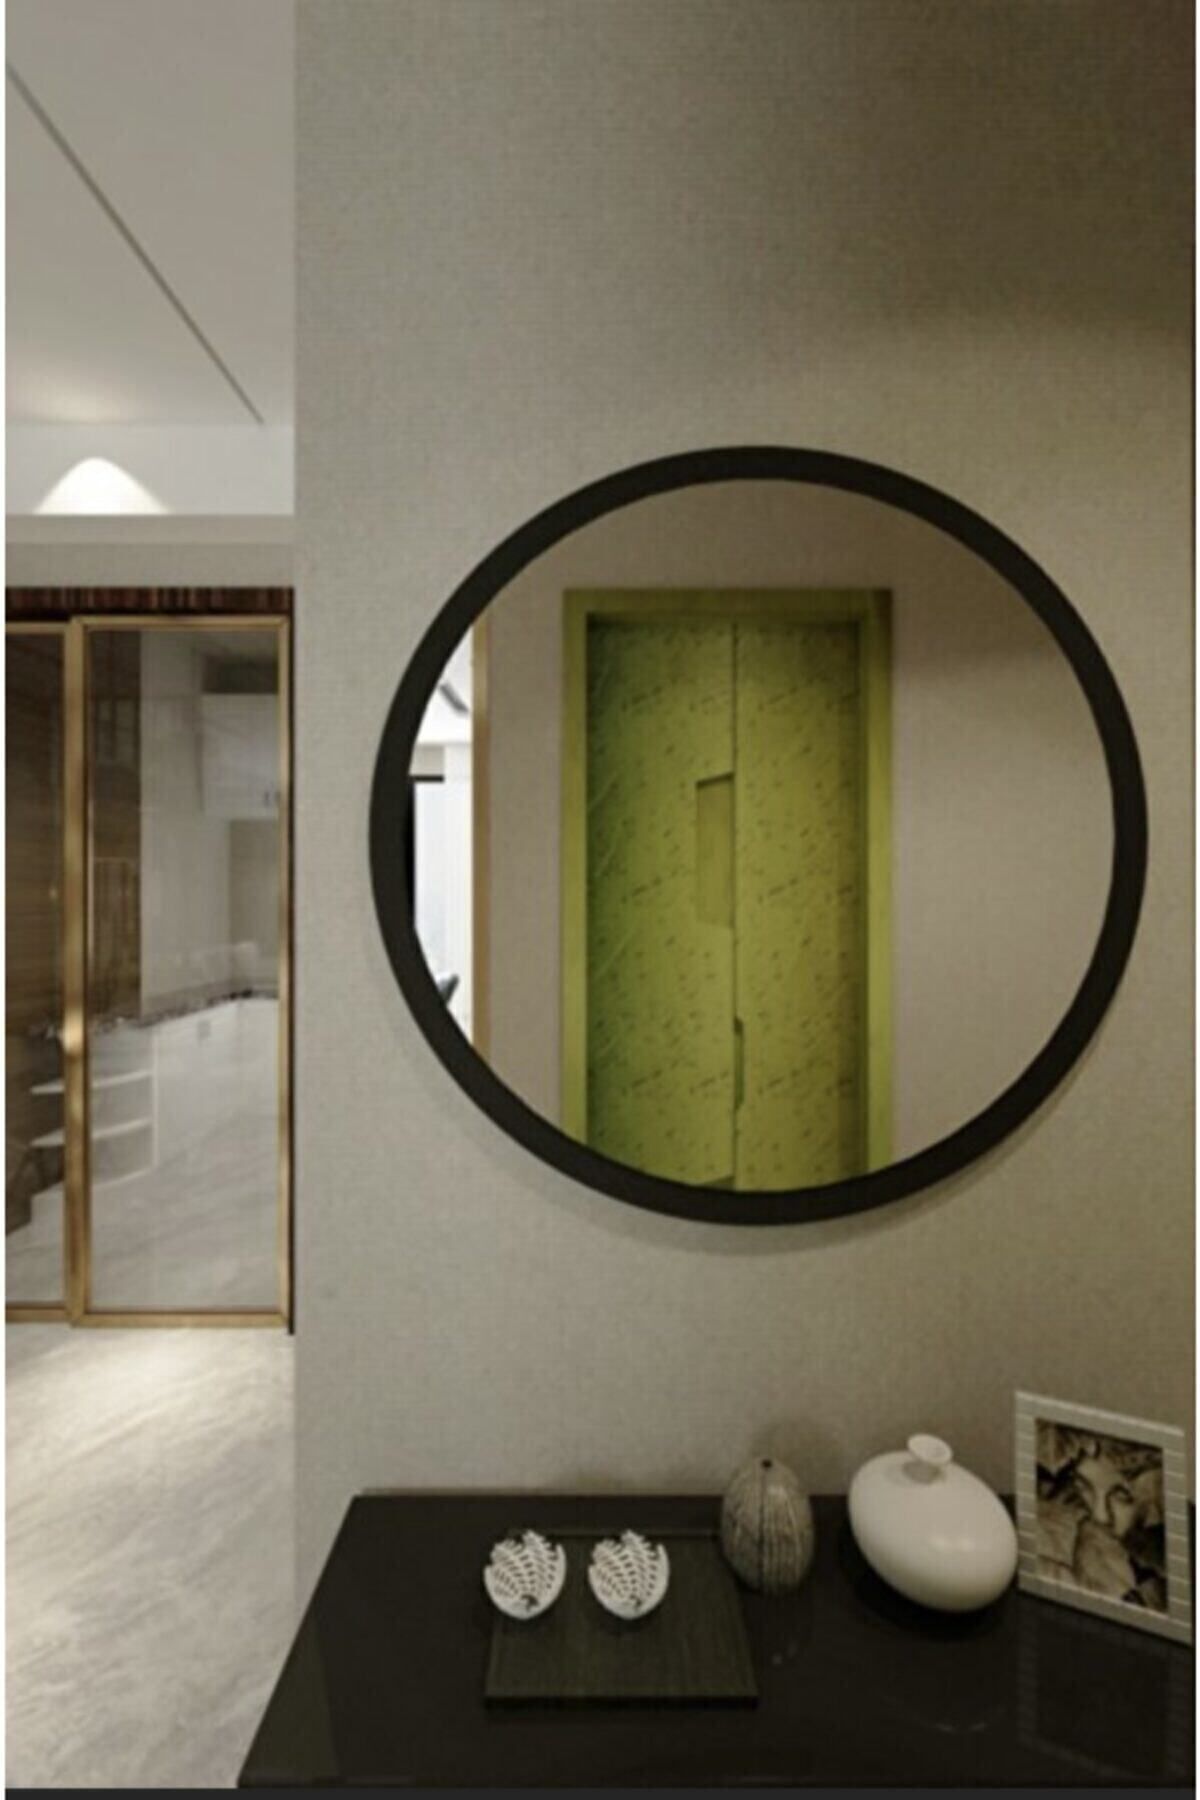 Rose Tasarım Siyah Dekoratif Yuvarlak Antre Hol Koridor Duvar Salon Mutfak Banyo Wc Ofis Aynası 45 Cm